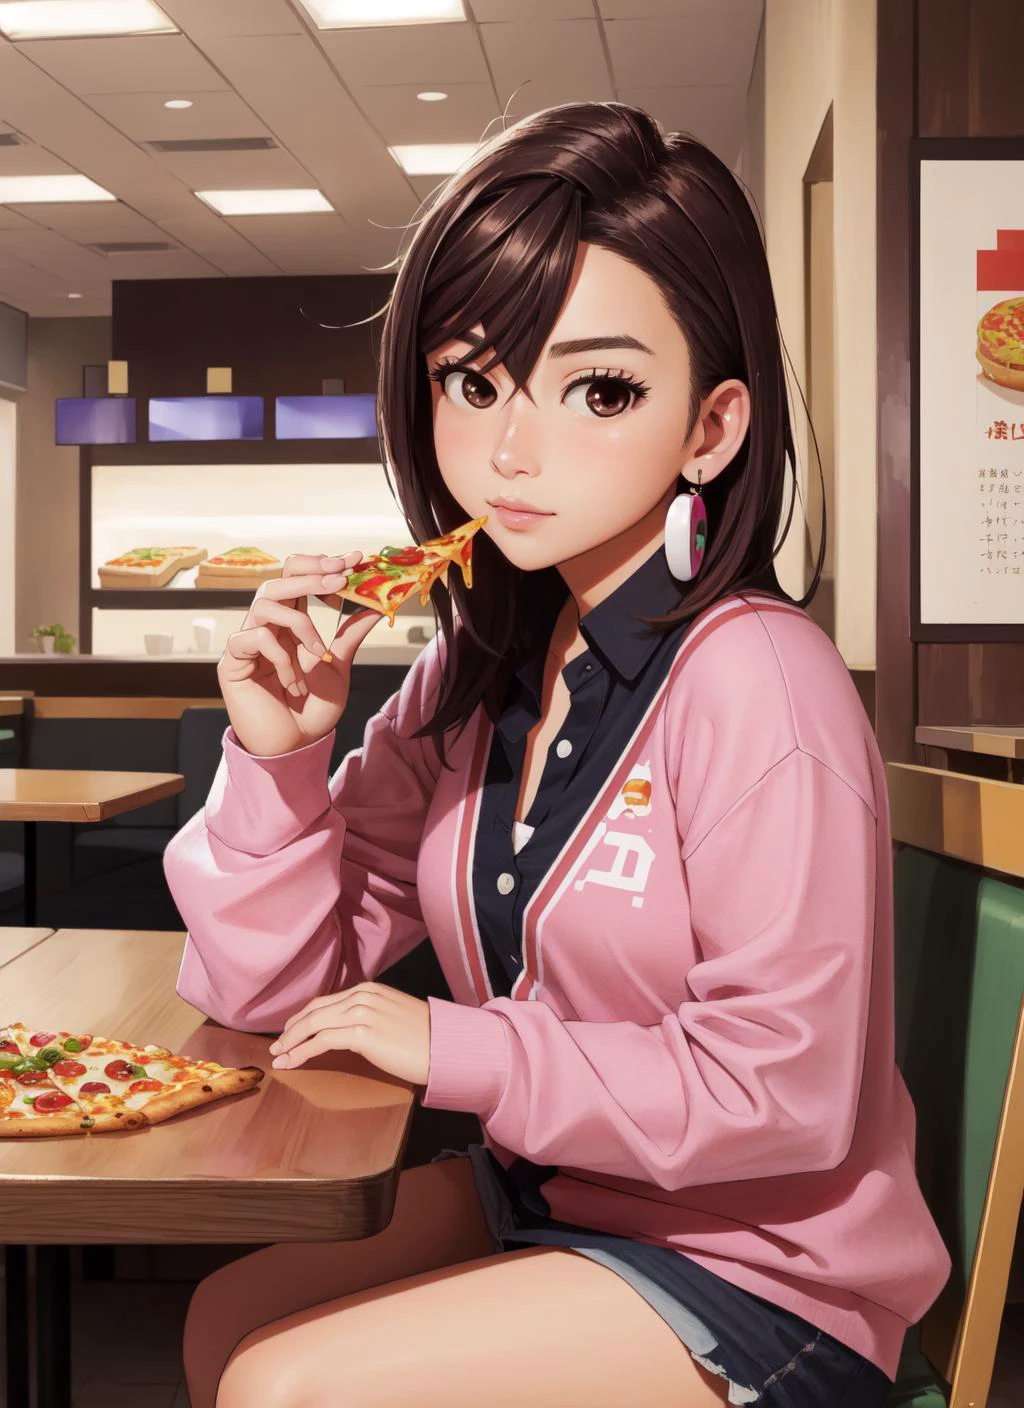 (Obra de arte, melhor qualidade),  Detalhes intrincados, 
1 garota,        momo_catalisador, 
fast food resturant, sentado à mesa, comendo pizza,